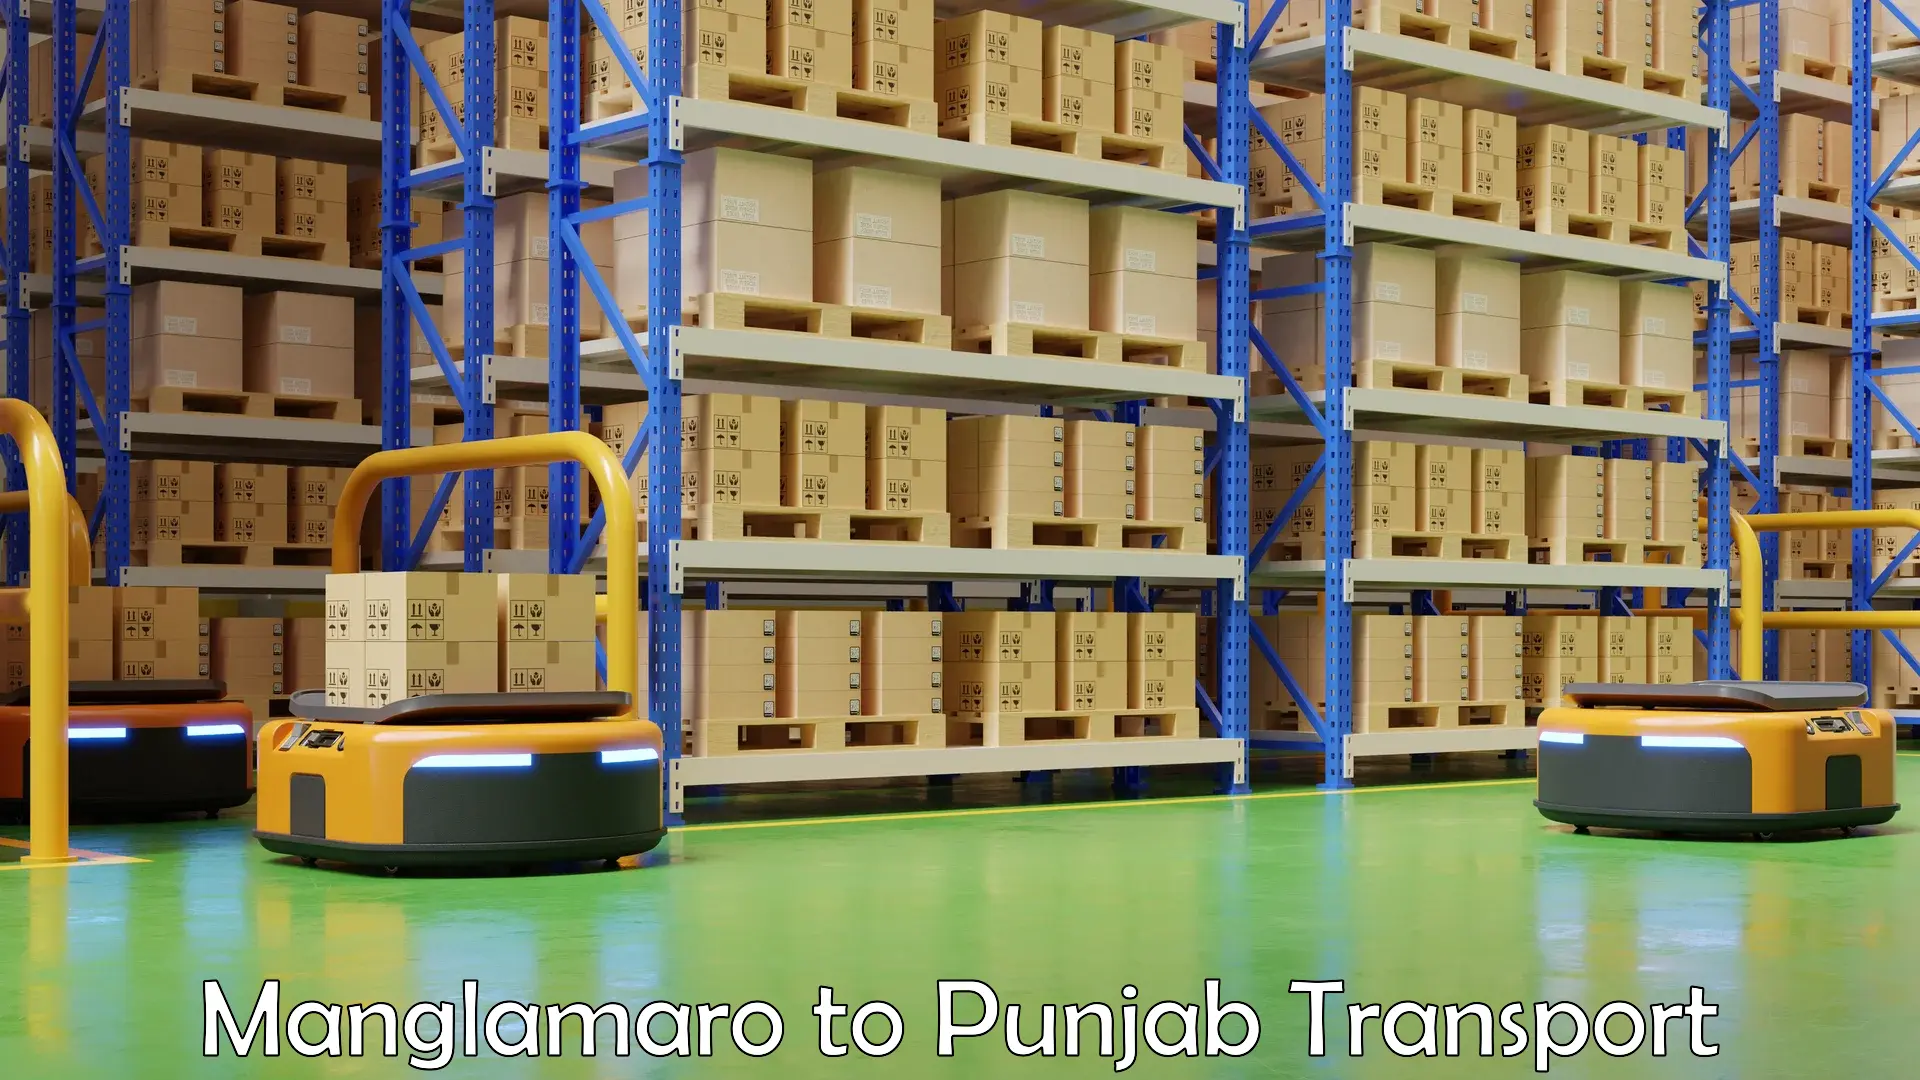 Road transport online services Manglamaro to Punjab